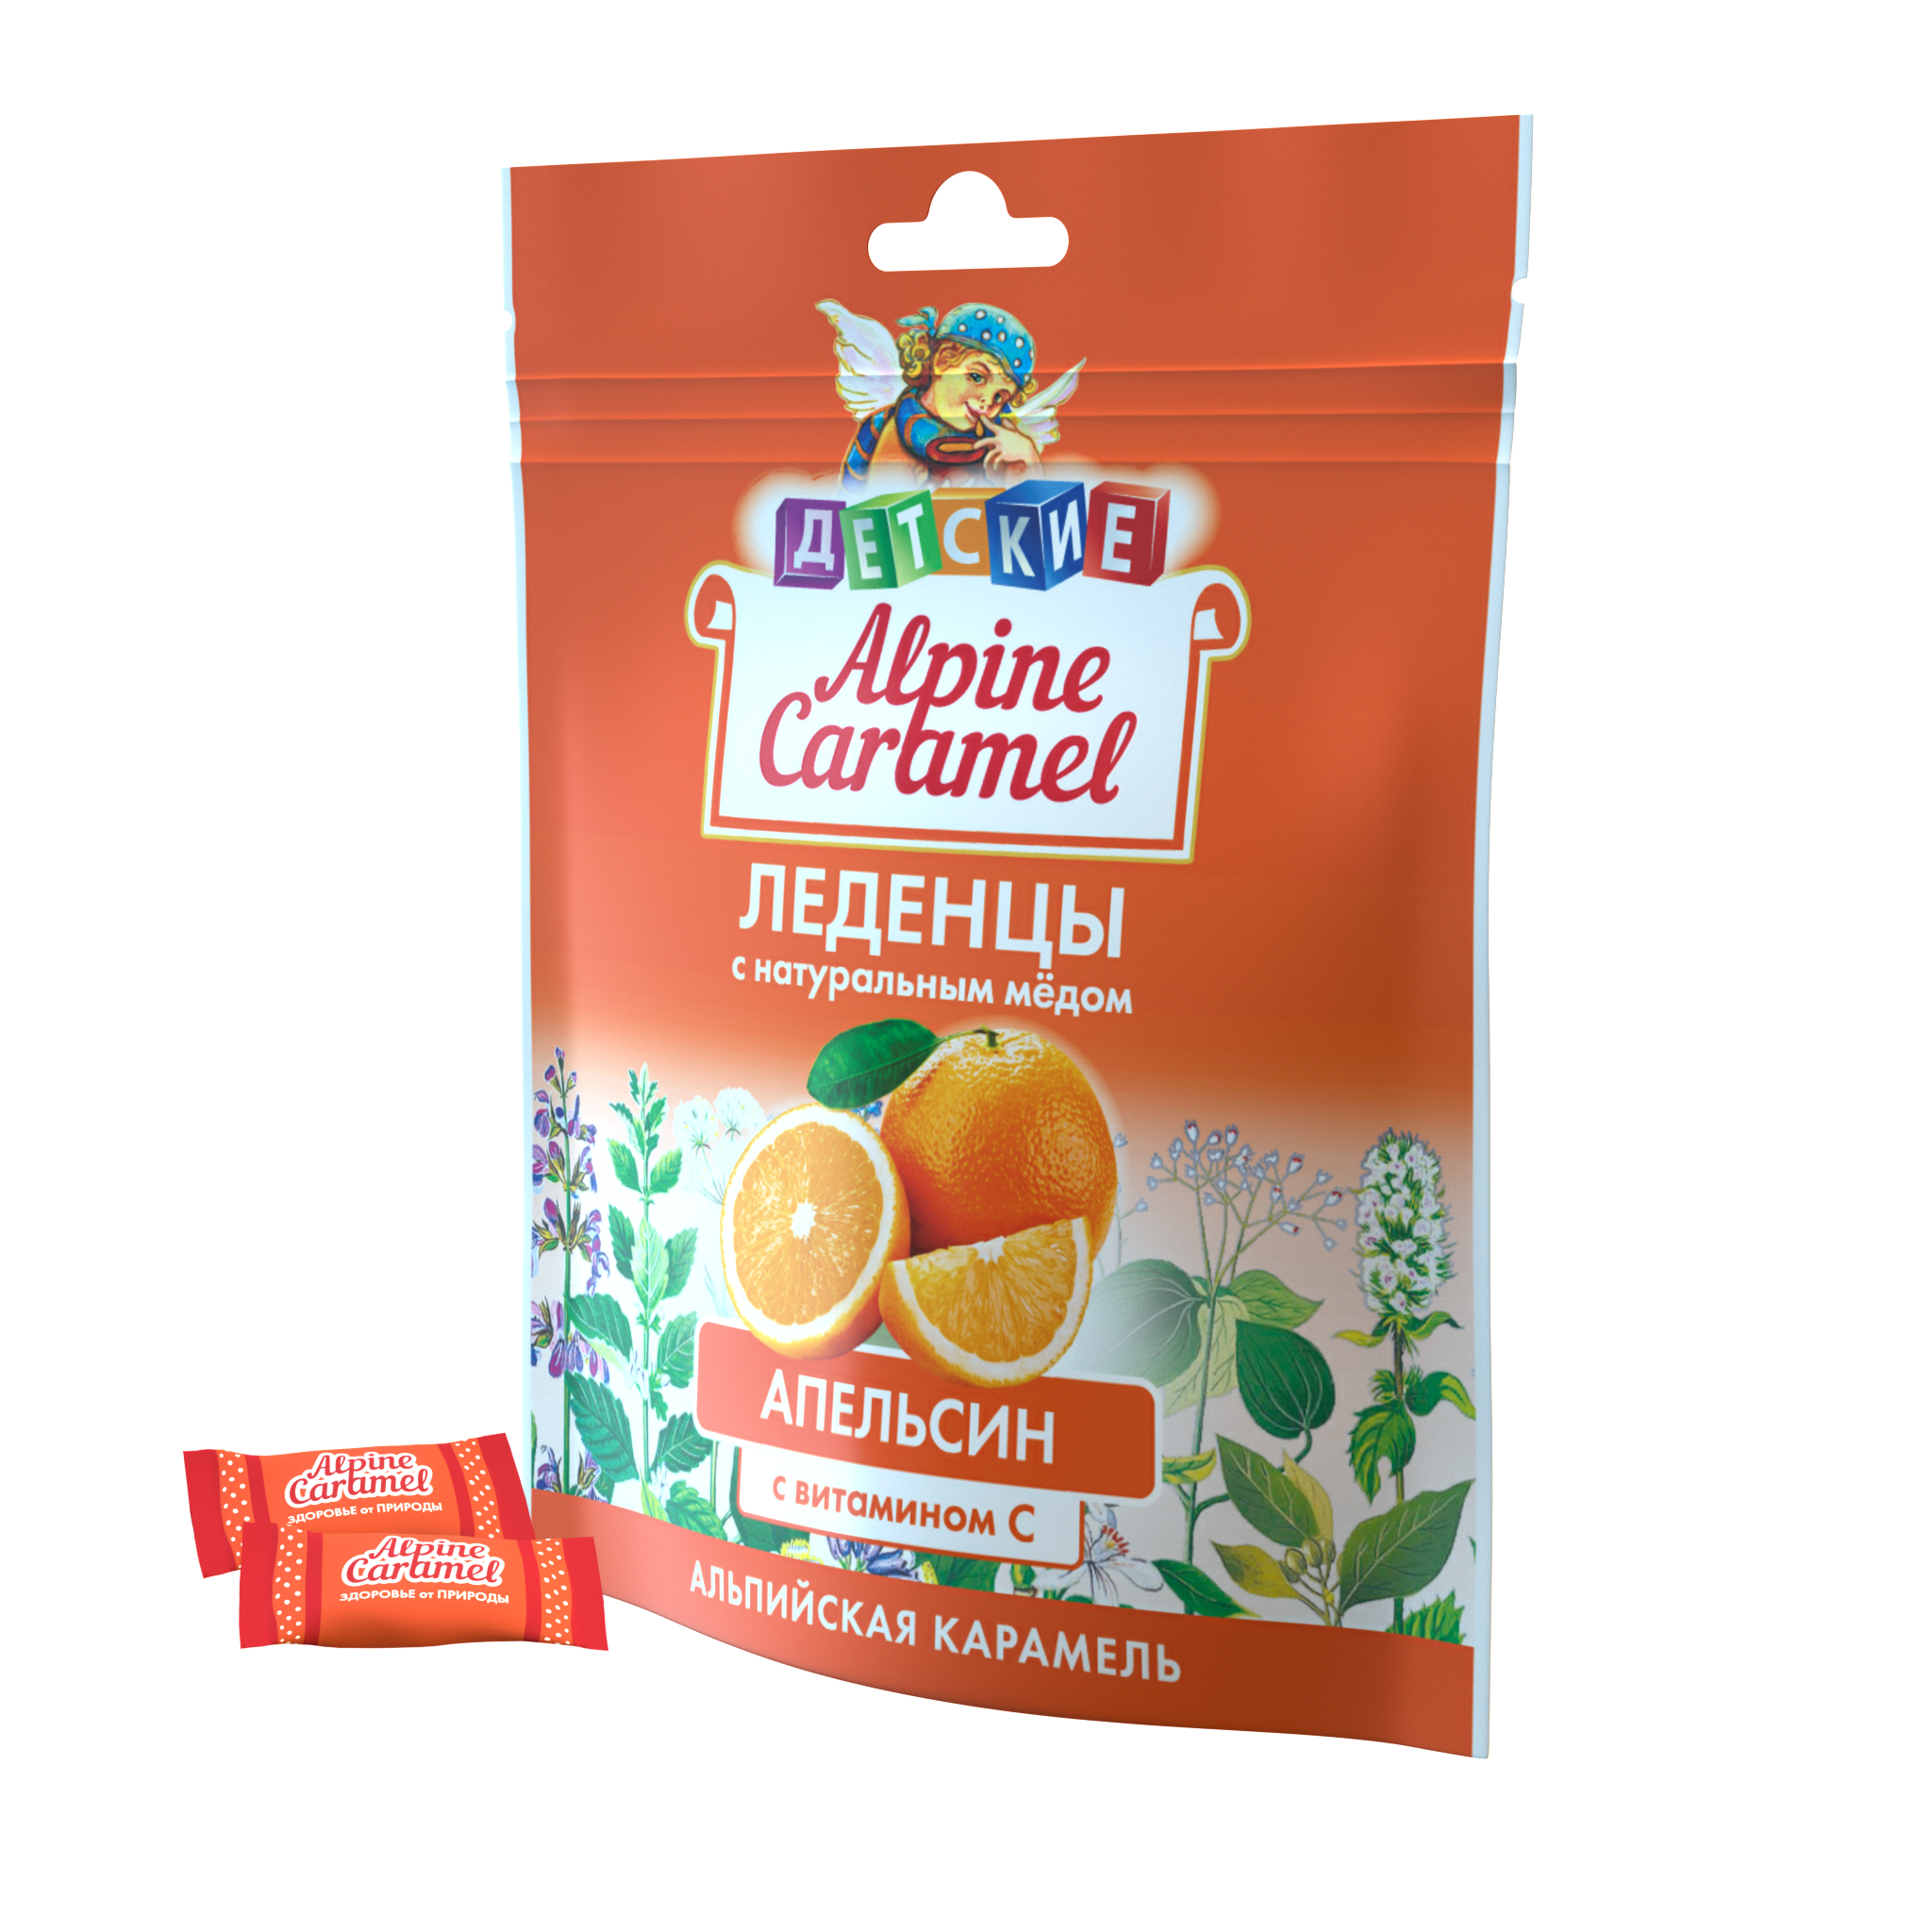 Alpine Caramel Альпийская Карамель леденцы дет (апельсин с медом и витамином С), 75 г альпийская карамель с медом и витамином с апельсин детские alpine caramel леденцы пак 75г